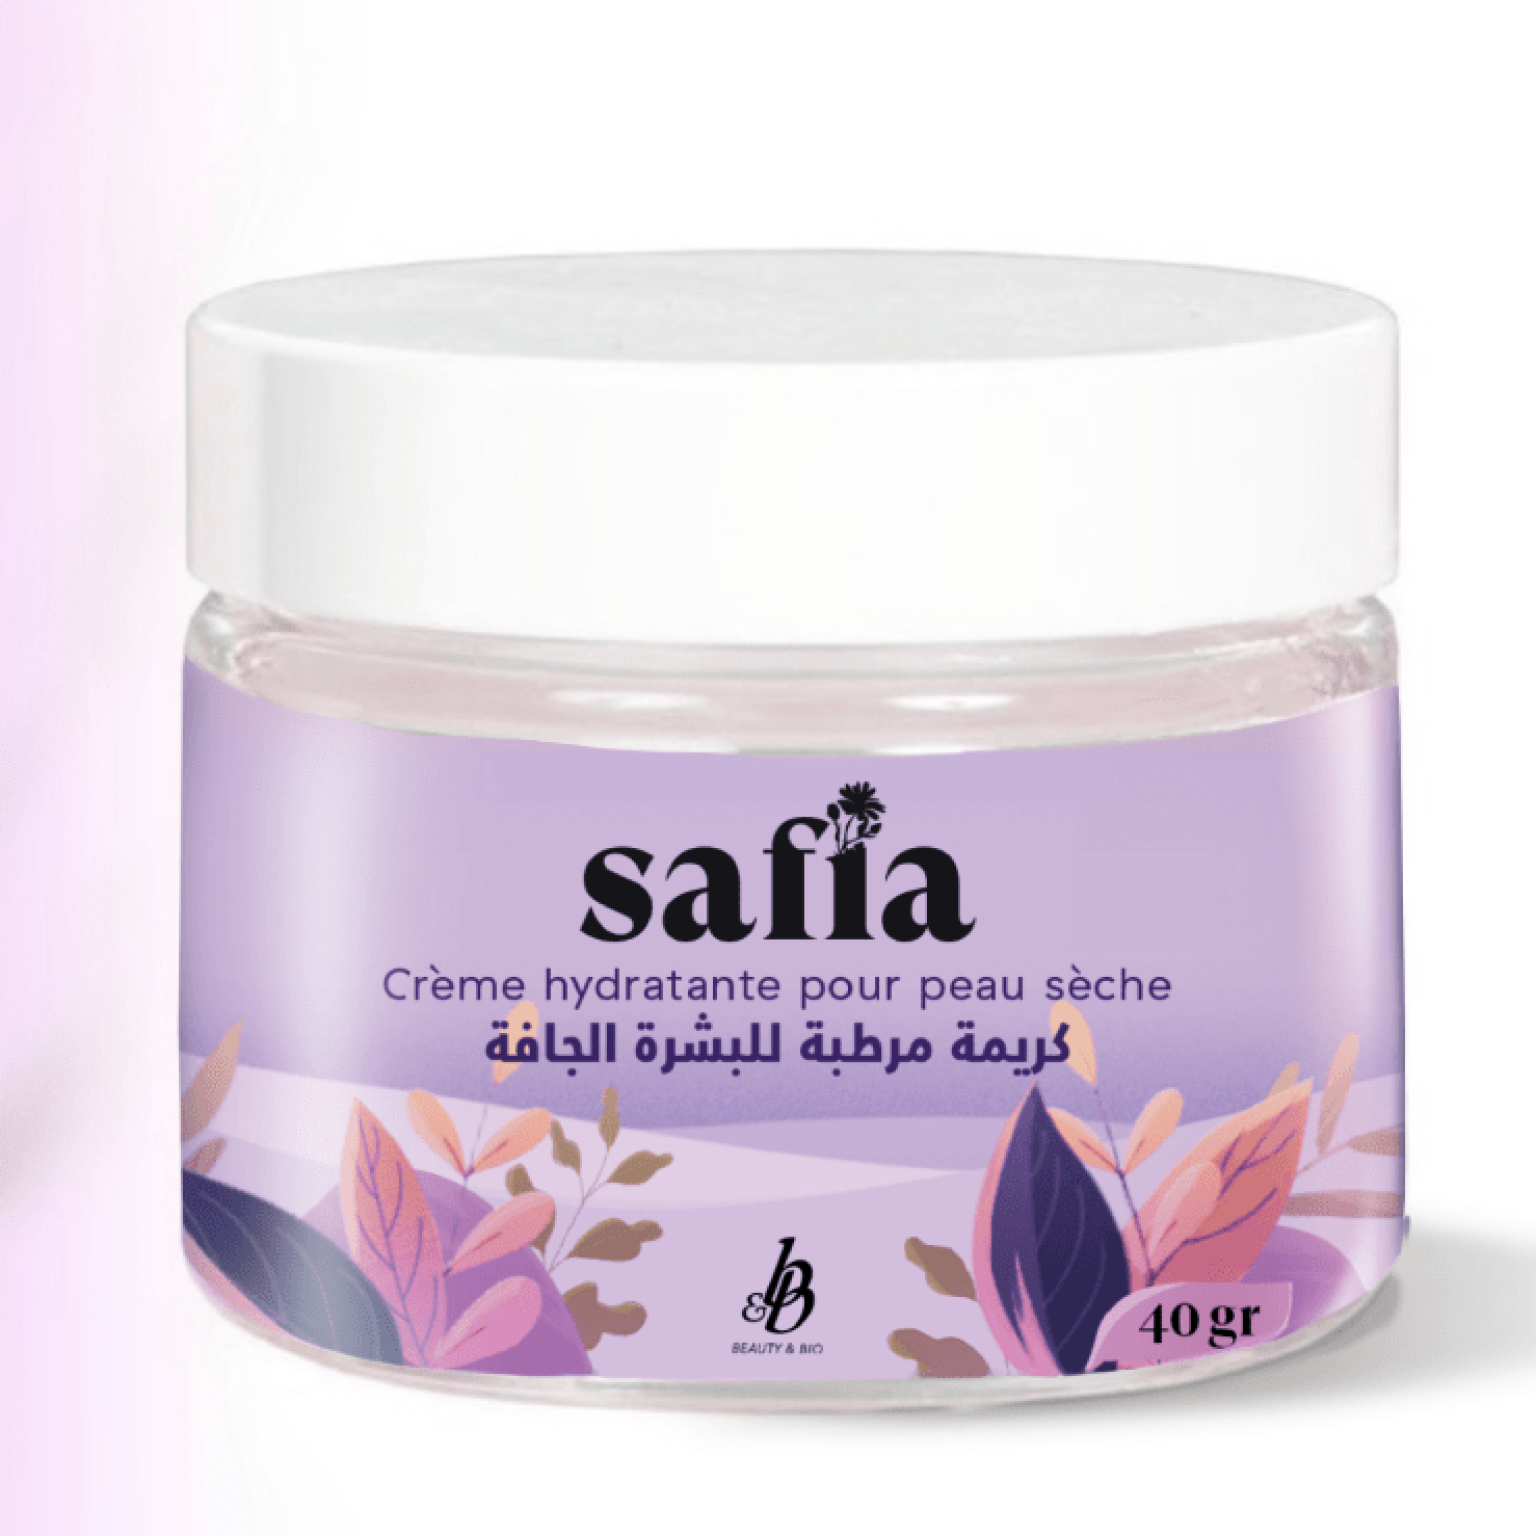 Safia- Crème hydratante pour les peaux sèches